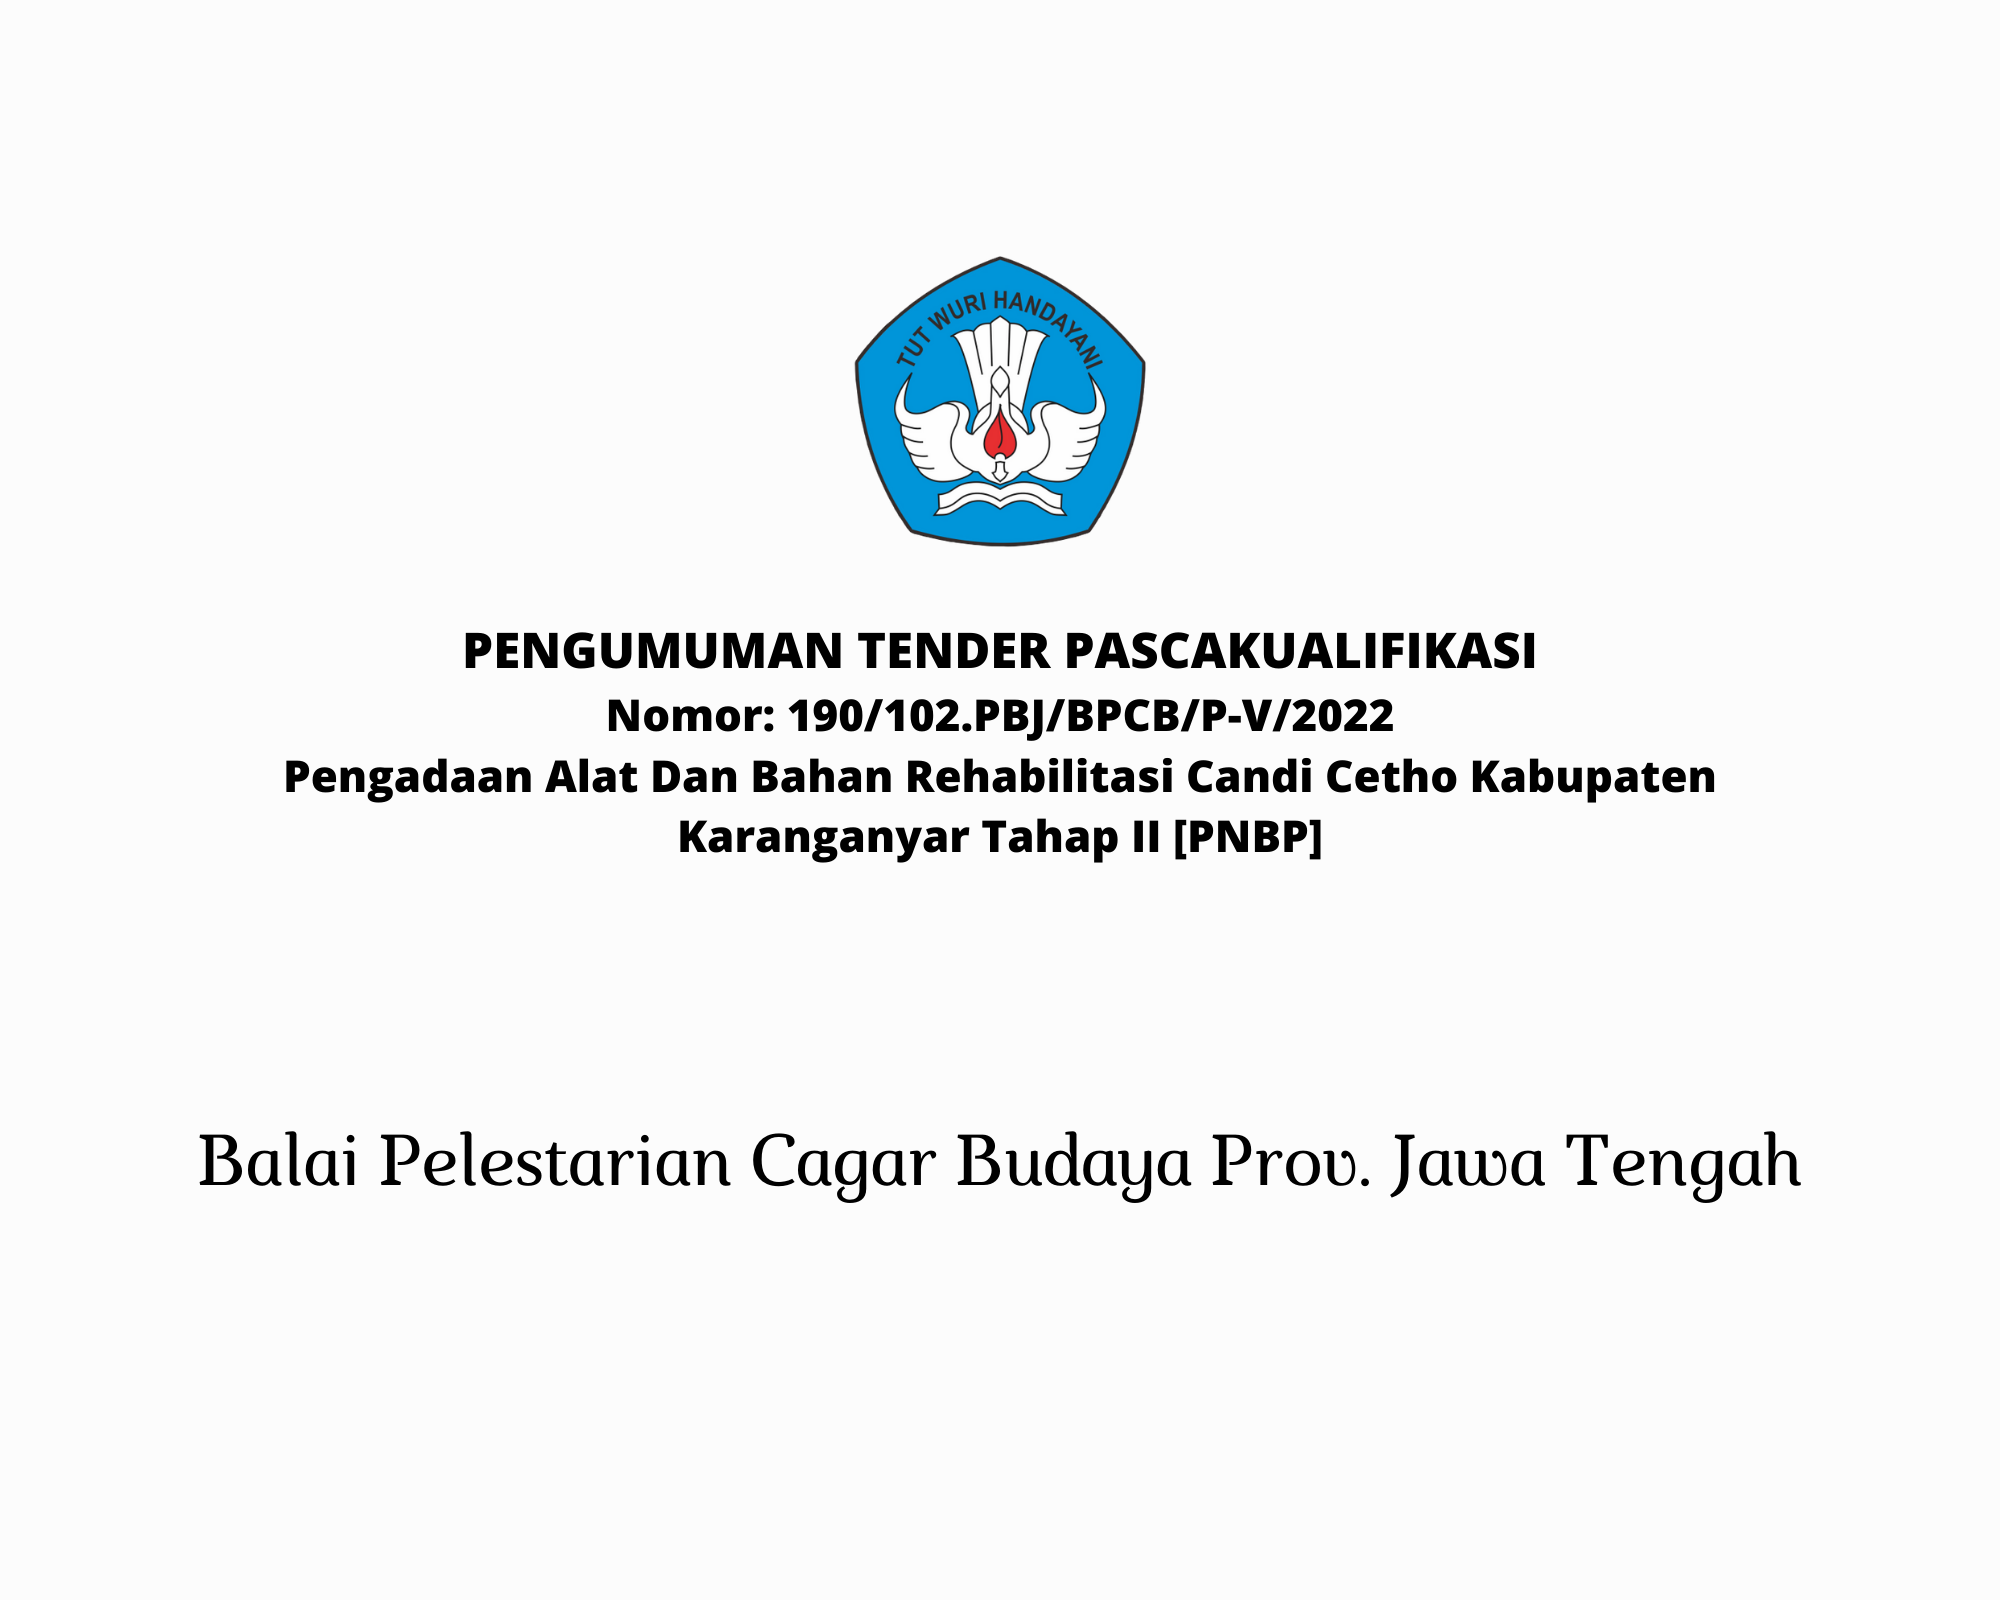 You are currently viewing Pengumuman Tender Pascakualifikasi, Pengadaan Alat Dan Bahan Rehabilitasi Candi Cetho Kabupaten Karanganyar Tahap II [PNBP]